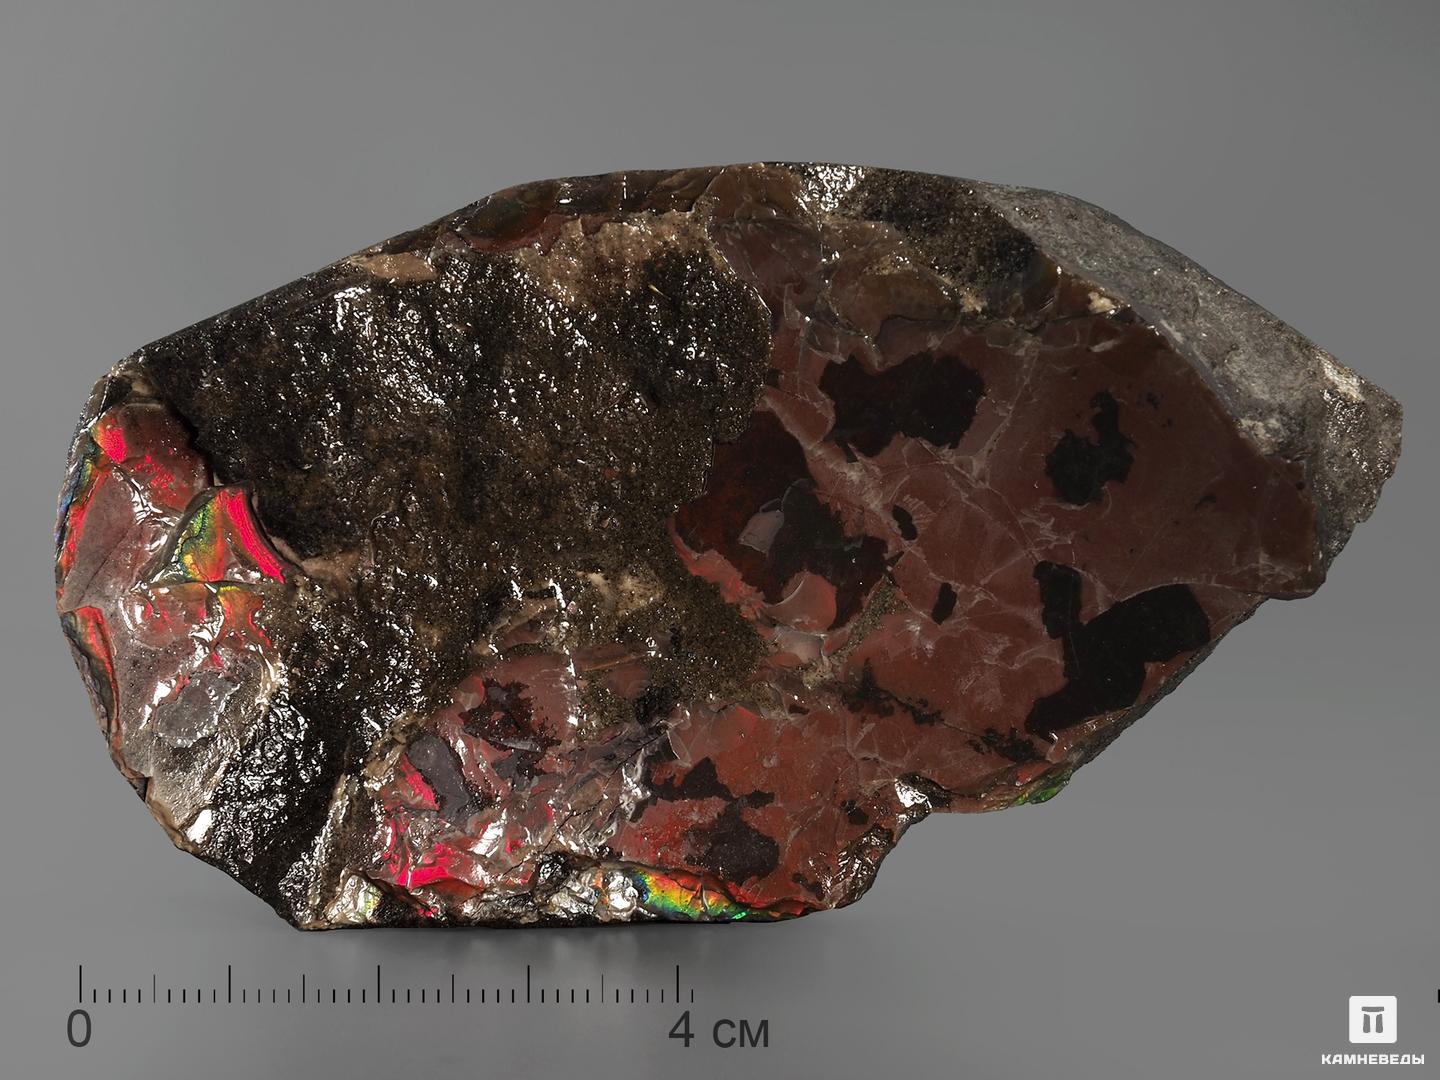 Аммолит (ископаемый перламутр аммонита), 9х5,2х1,6 см